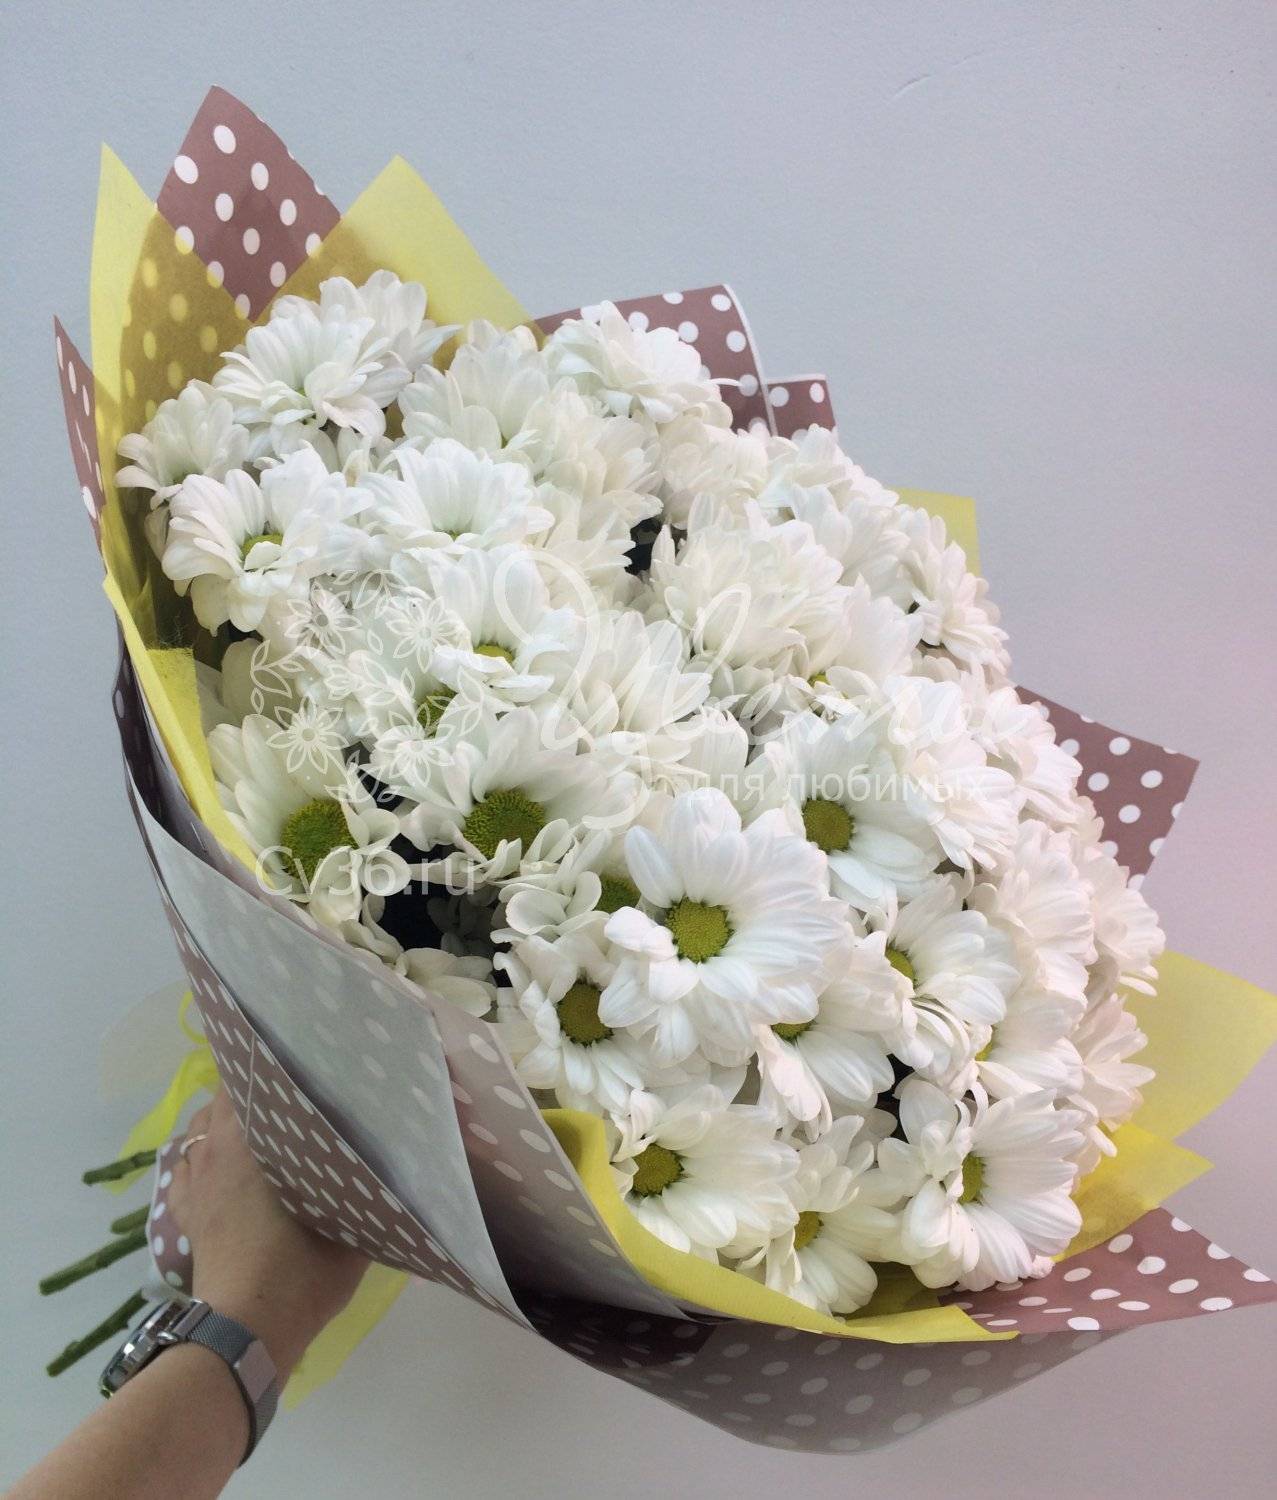 Что означает букет белых хризантем. дарят хризантемы - к замужеству?